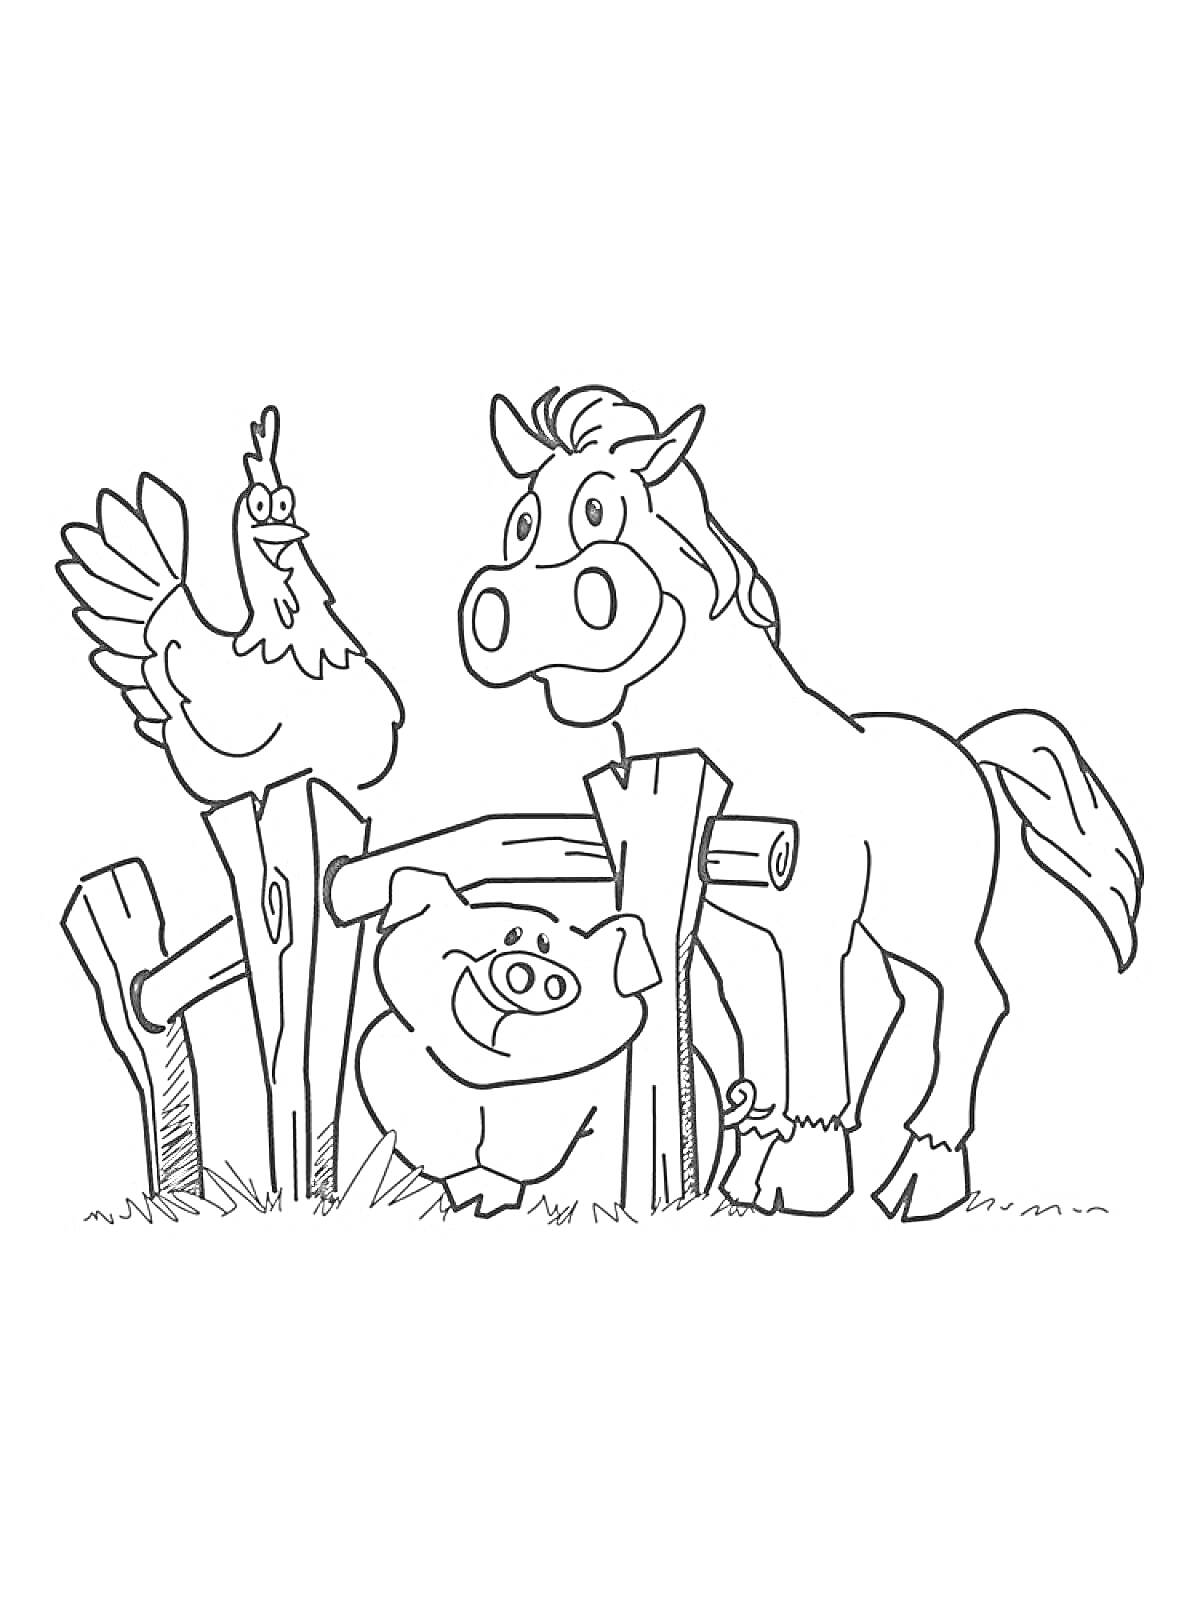 Раскраска Курочка, лошадка и поросенок на ферме с забором